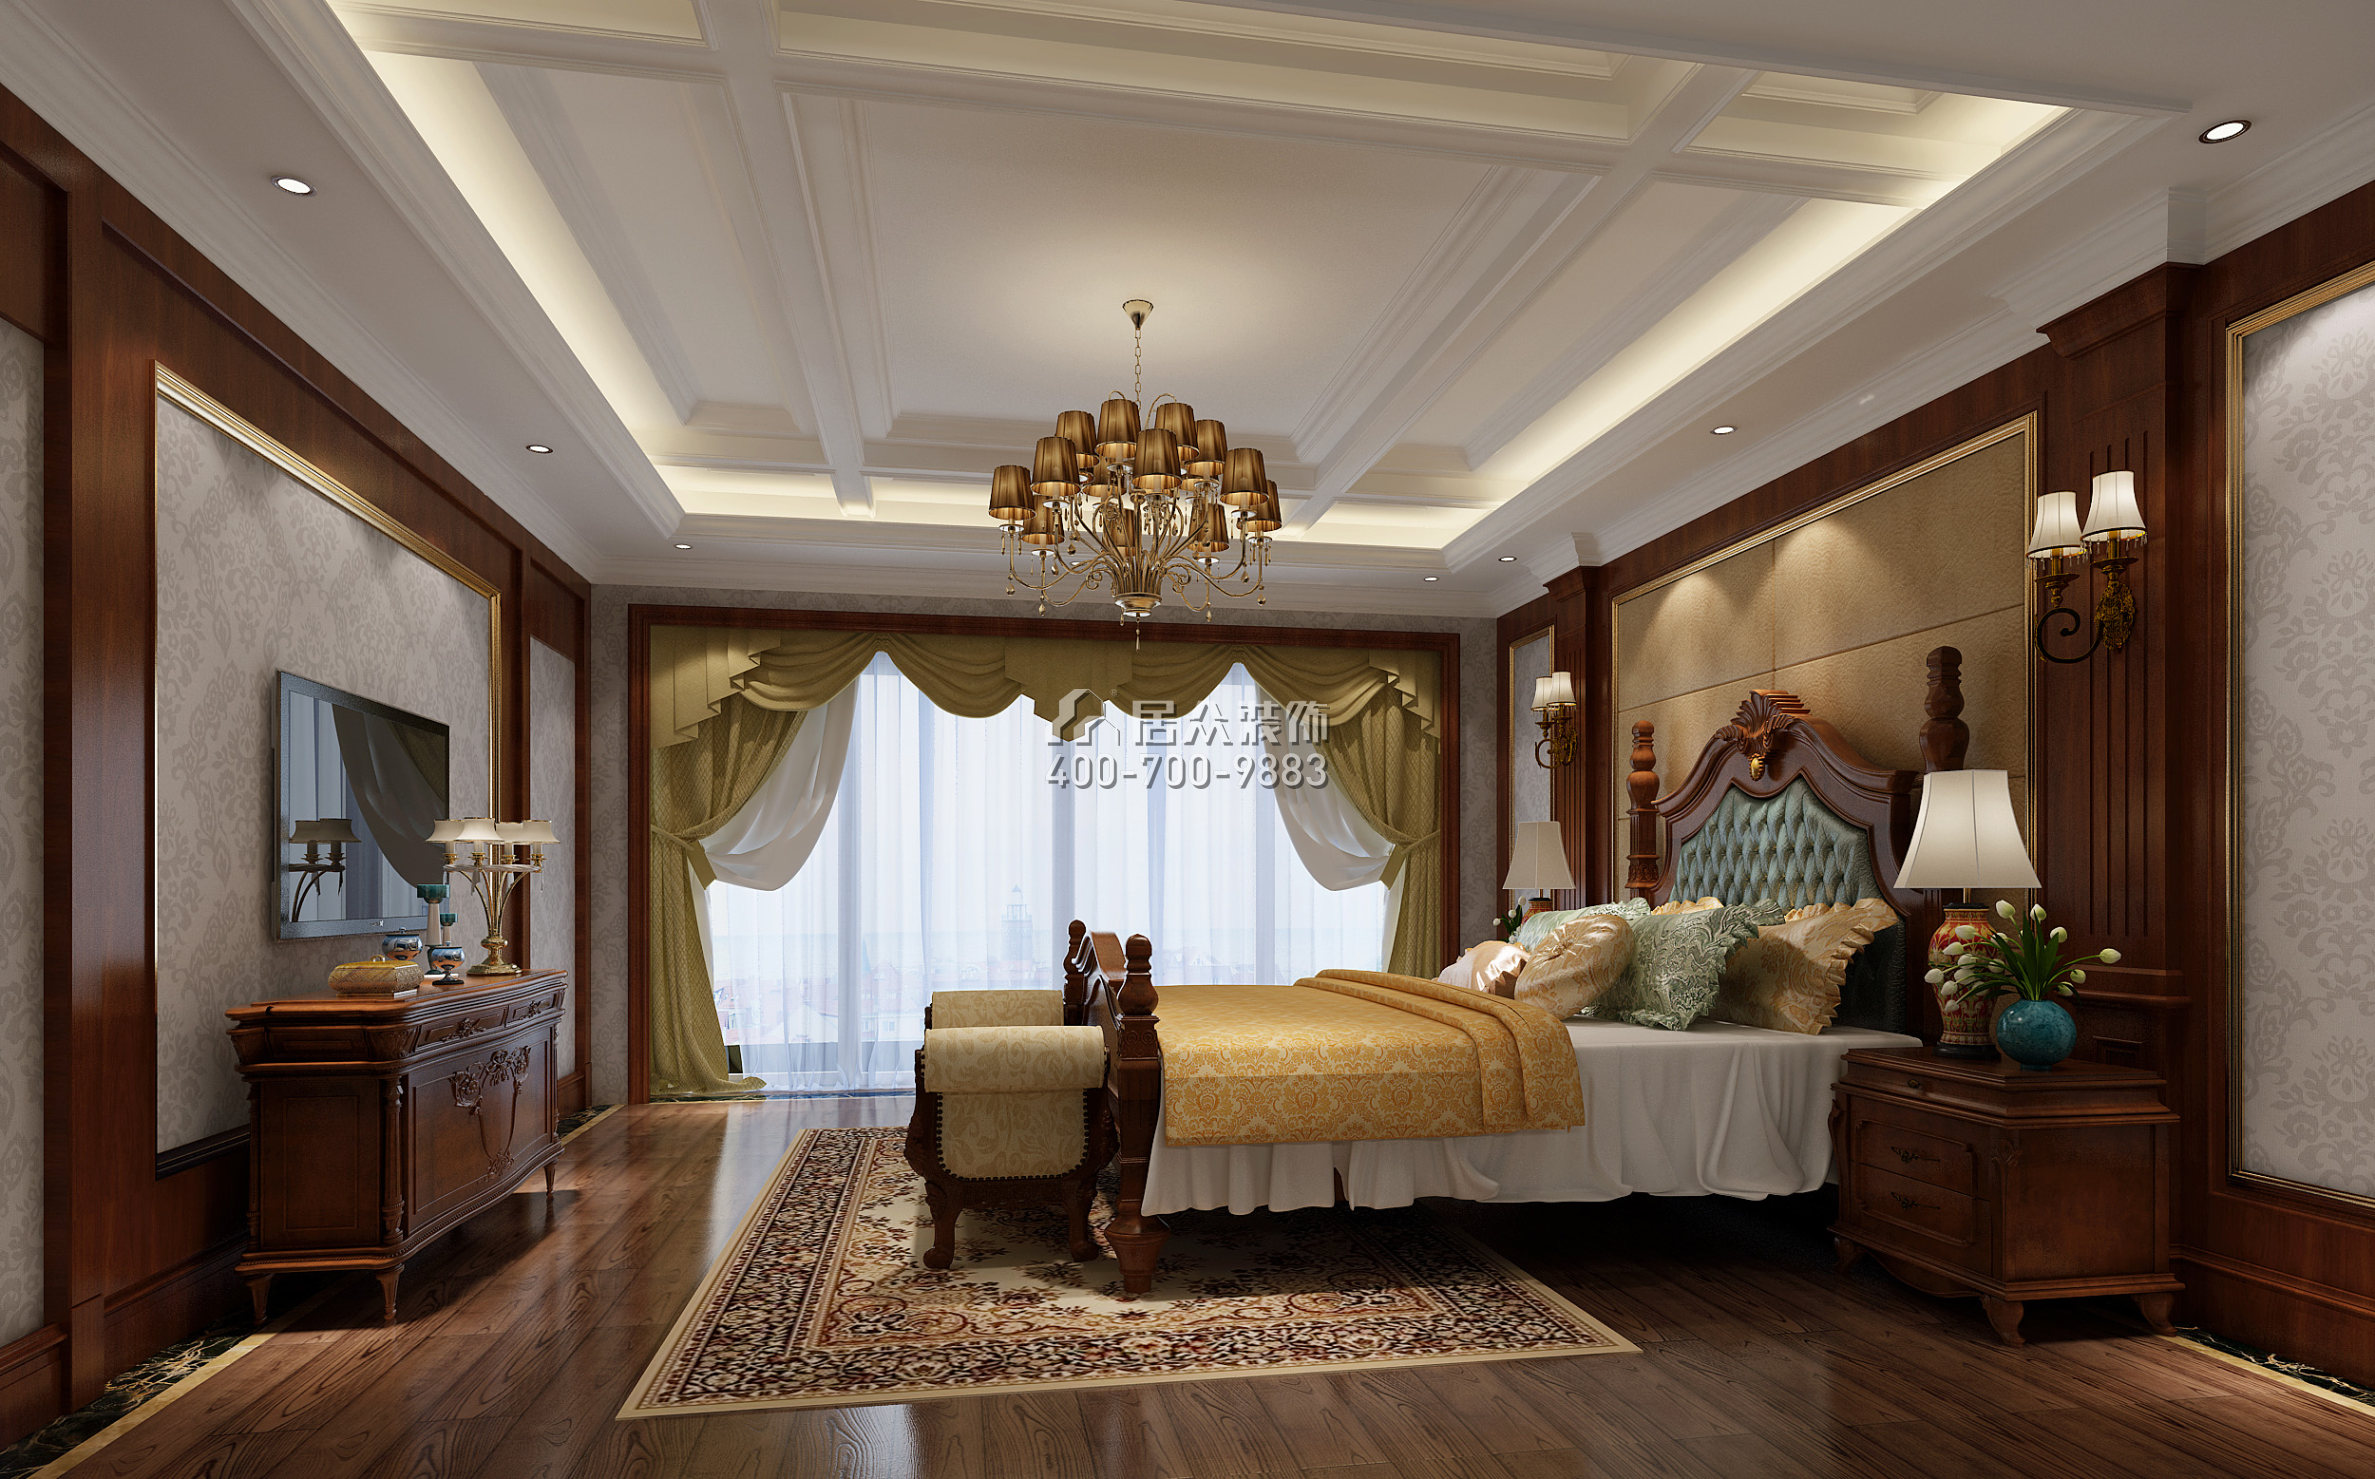 纯水岸十五期300平方米美式风格平层户型卧室装修效果图